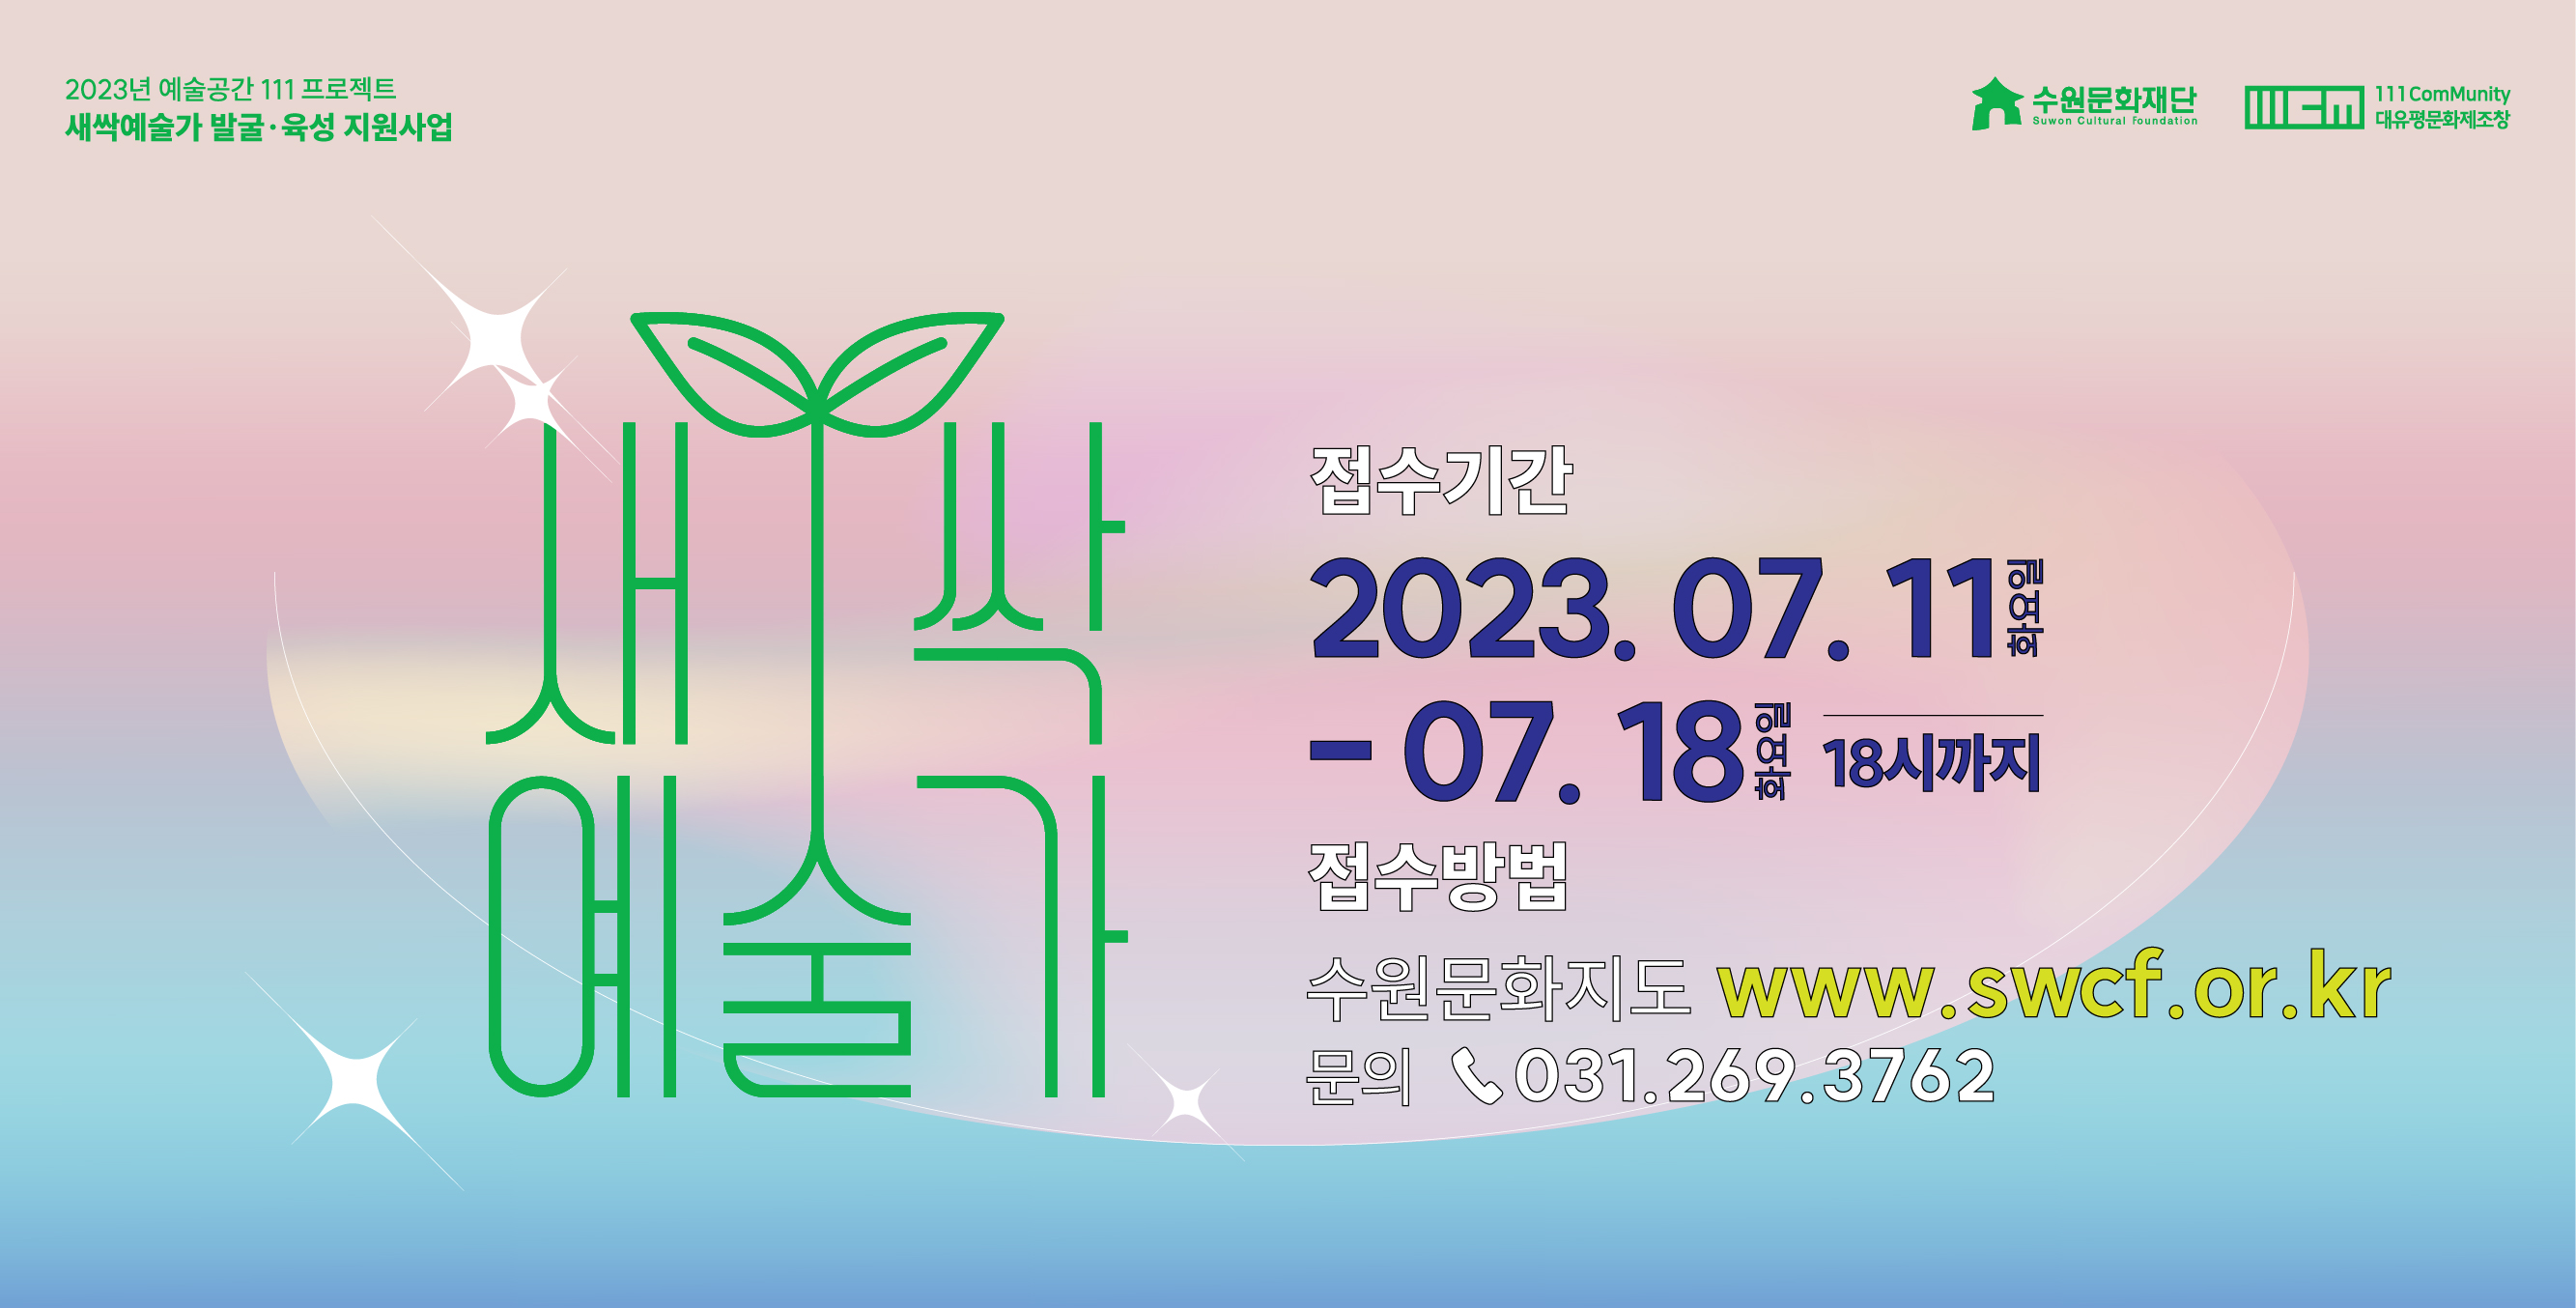 2023년 예술공간 111 프로젝트 - ‘새싹예술가’ 발굴·육성 지원사업 신청 모집 바로가기